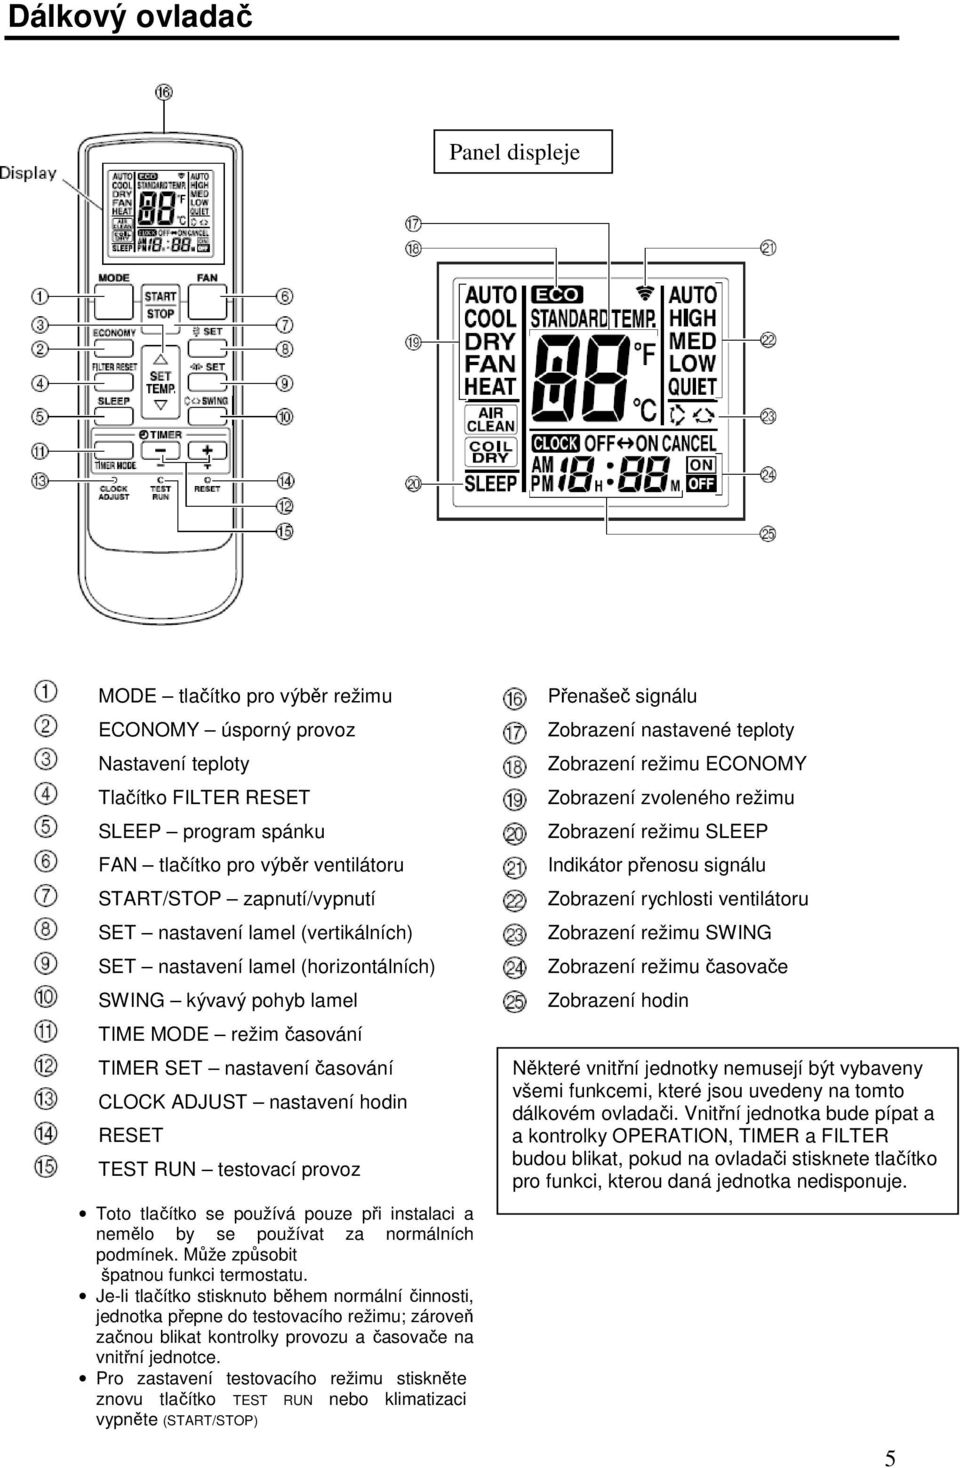 RESET TEST RUN testovací provoz Toto tlačítko se používá pouze při instalaci a nemělo by se používat za normálních podmínek. Může způsobit špatnou funkci termostatu.